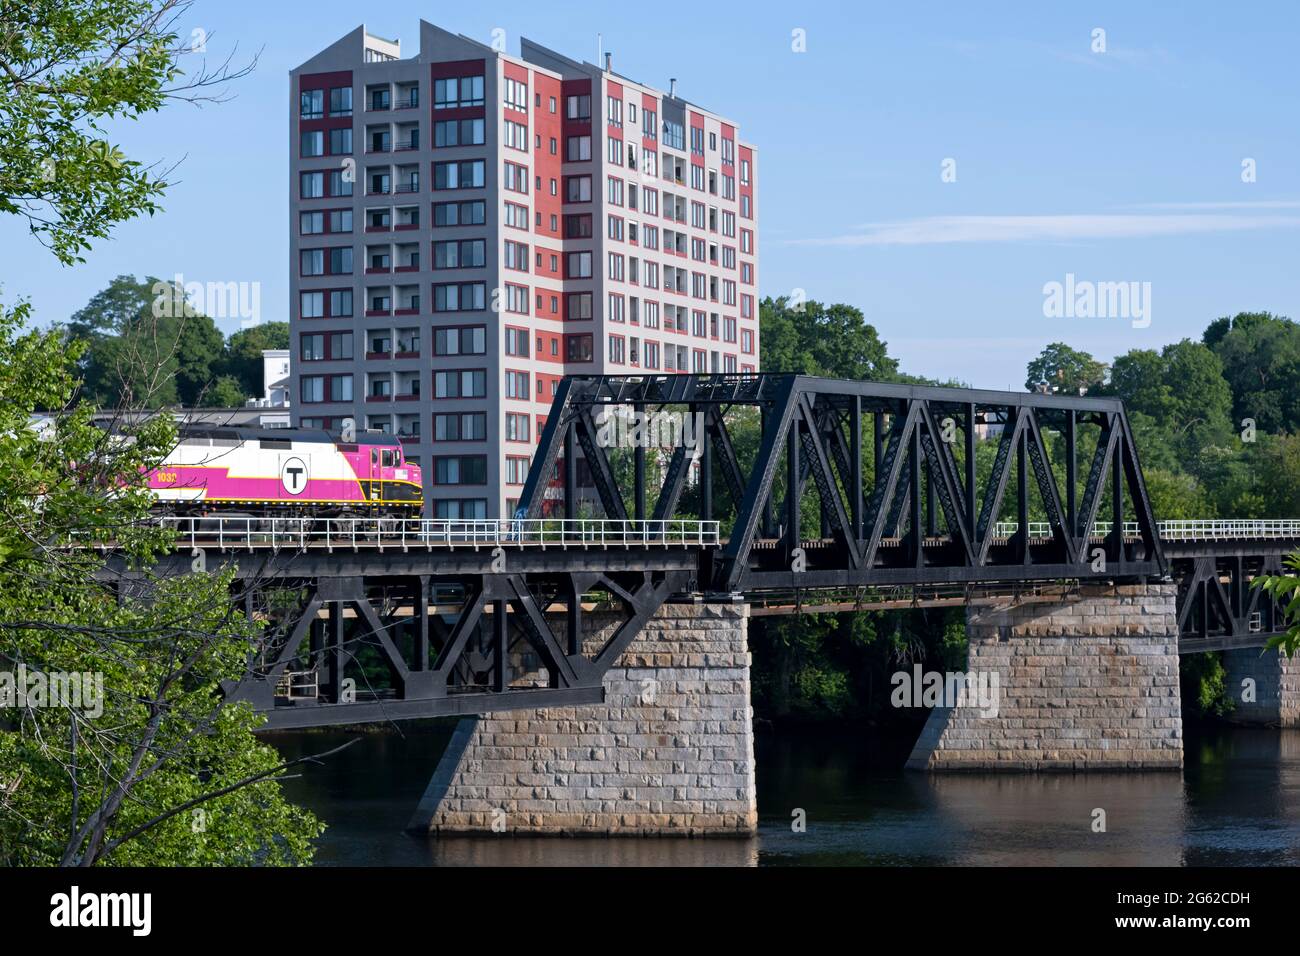 Haverhill, Massachusetts, USA, 28 giugno 2021: Un treno per pendolari della Massachusetts Bay Transit Authority attraversa il fiume Merrimack. - Haverhill ma Foto Stock